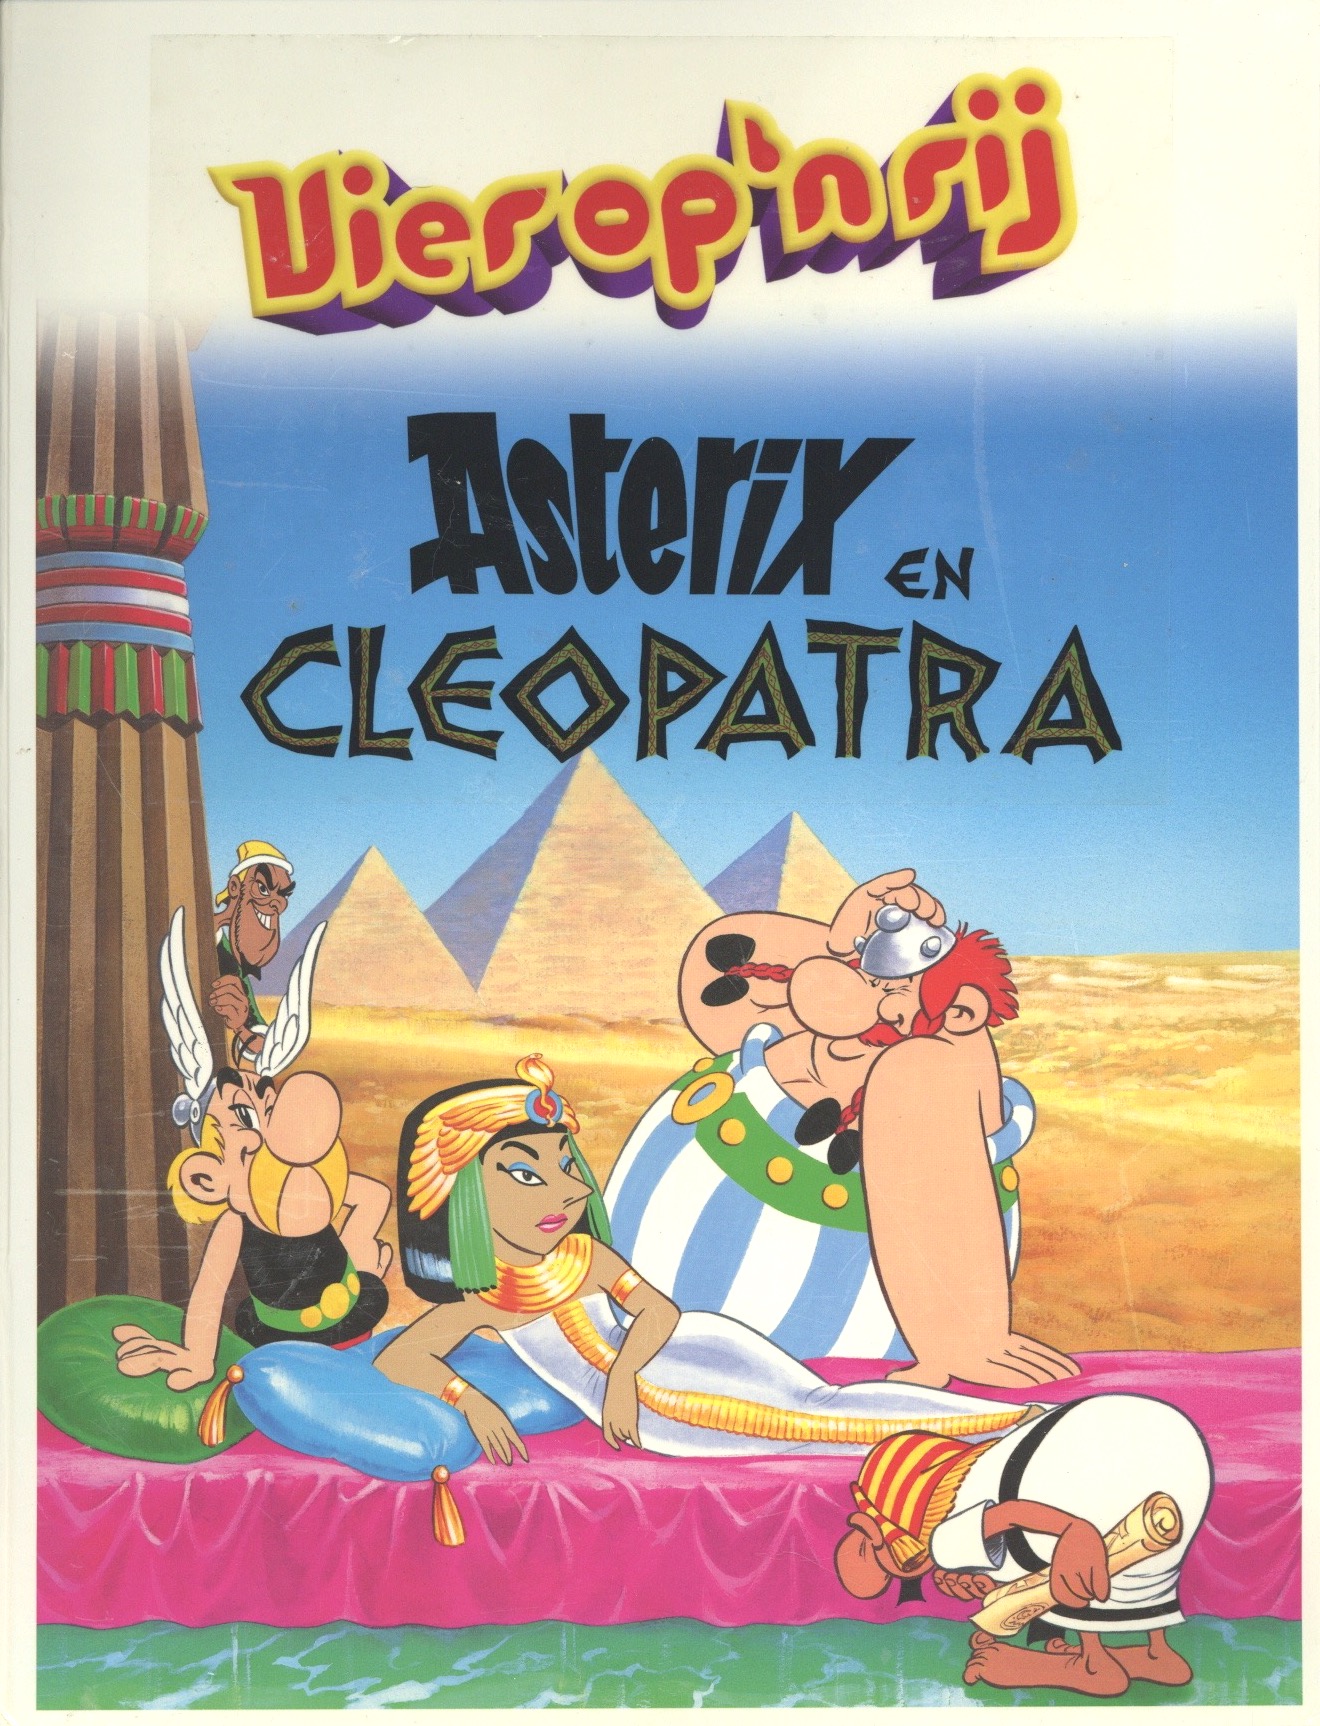 Atlas Asterix Spellenserie: 22 - Vier op een Rij (Asterix en Cleopatra)